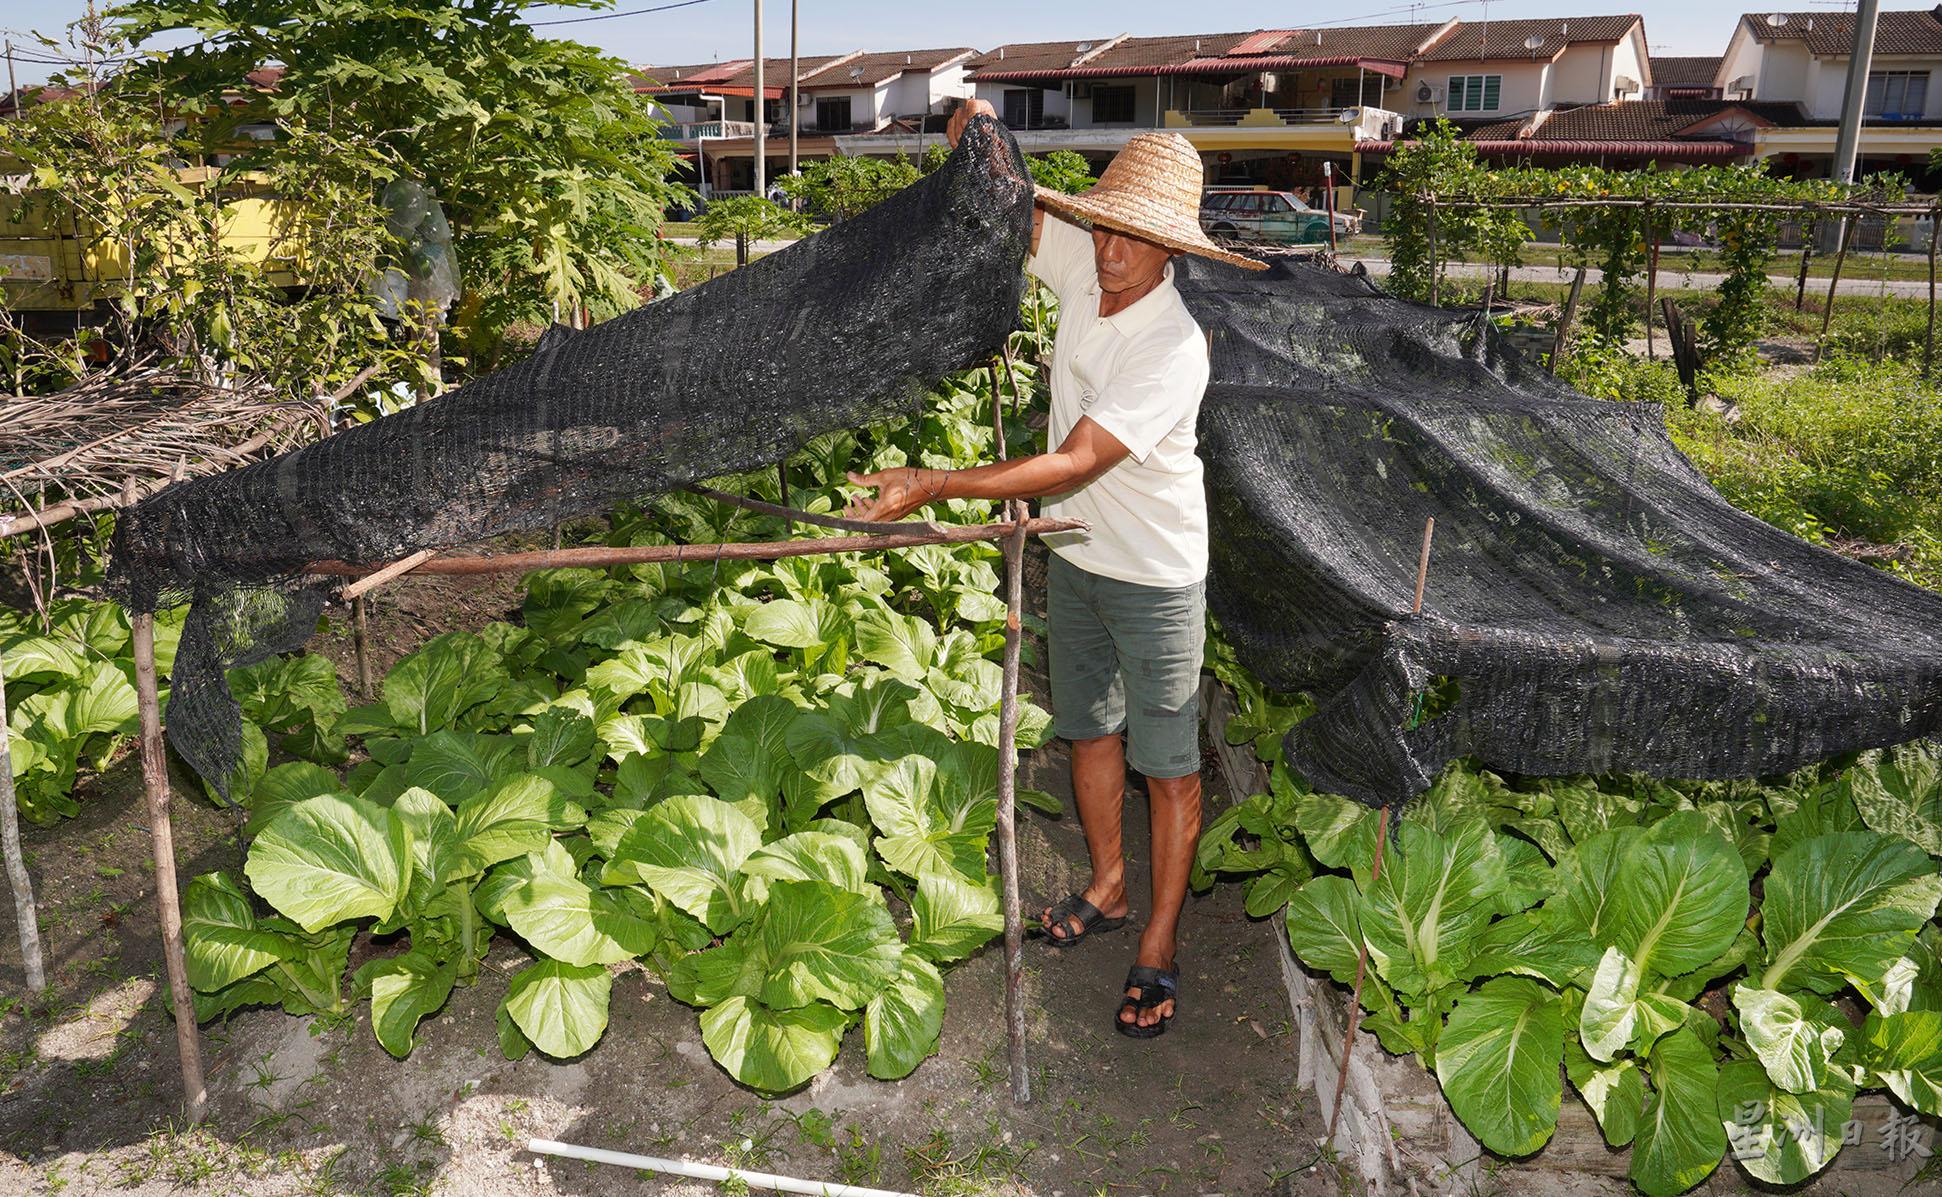 蔡锦平用黑网棚以防止芥菜籽在播种阶段遭雨水冲走，同时避免冲力过大的雨水破坏芥菜的生长。

